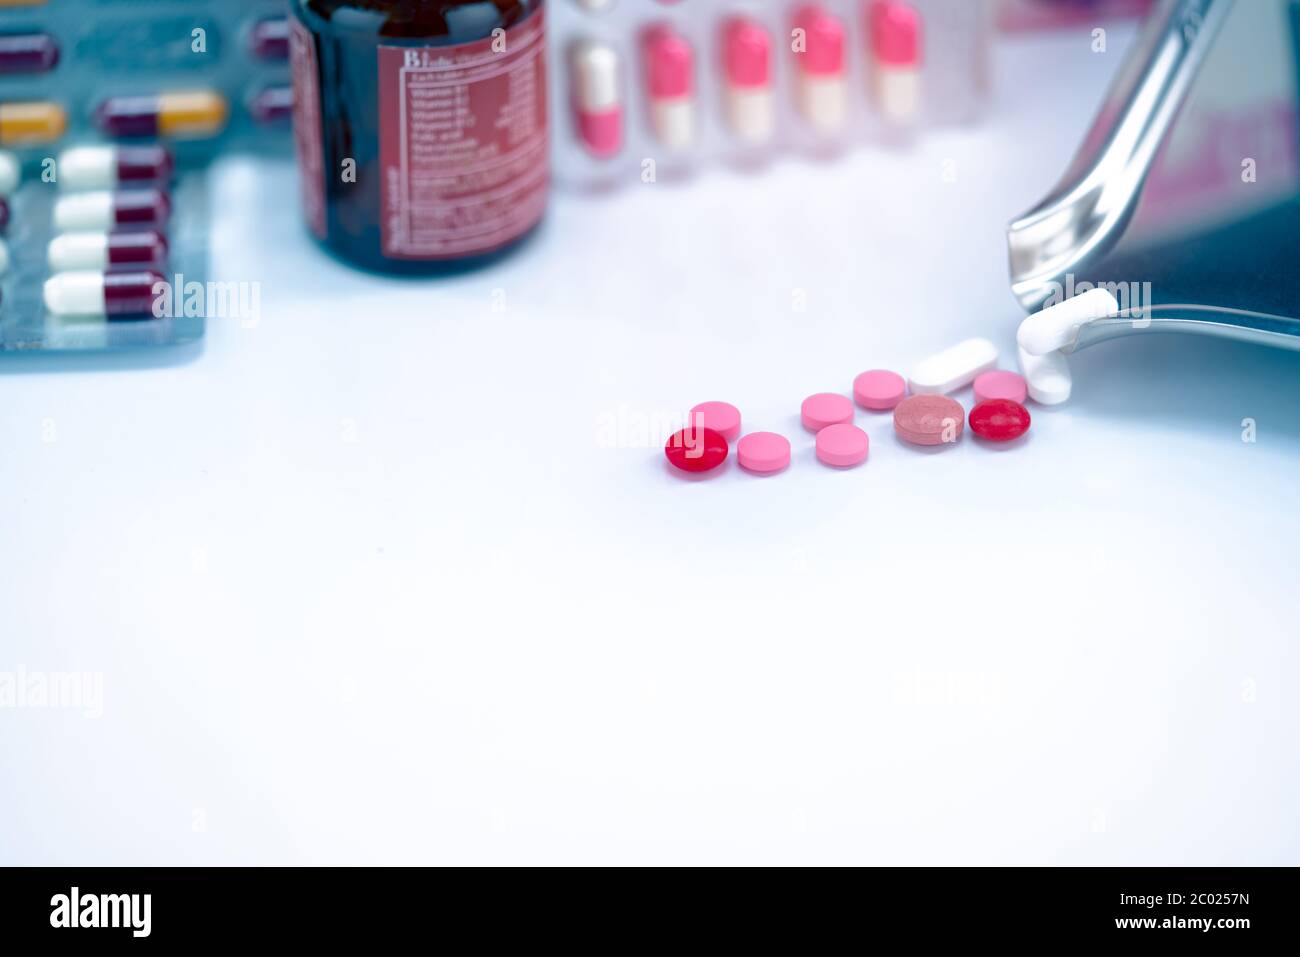 Rote, rosa und weiße Tabletten Pillen mit Drogentablett auf verschwommene Glas Drogenflasche und Blisterpackung. Geknackte Tabletten Pillen. Abgelaufene Medikamente. Schmerzmittel. Stockfoto